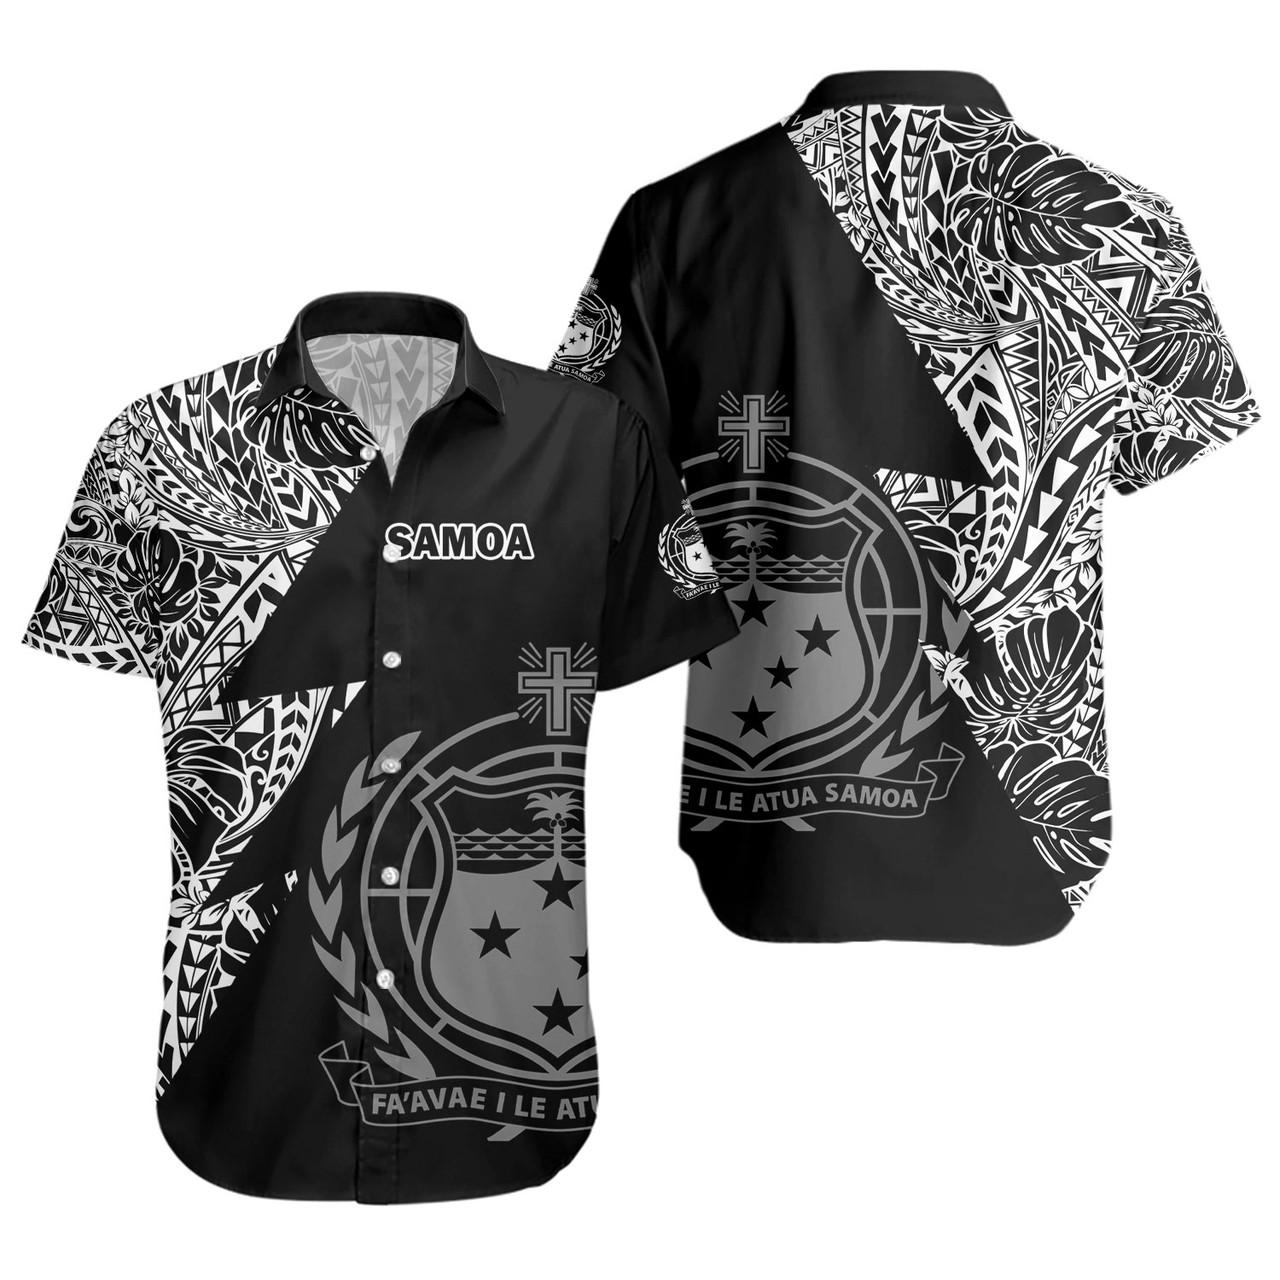 Samoa Custom Personalised Short Sleeve Shirt Flash Style